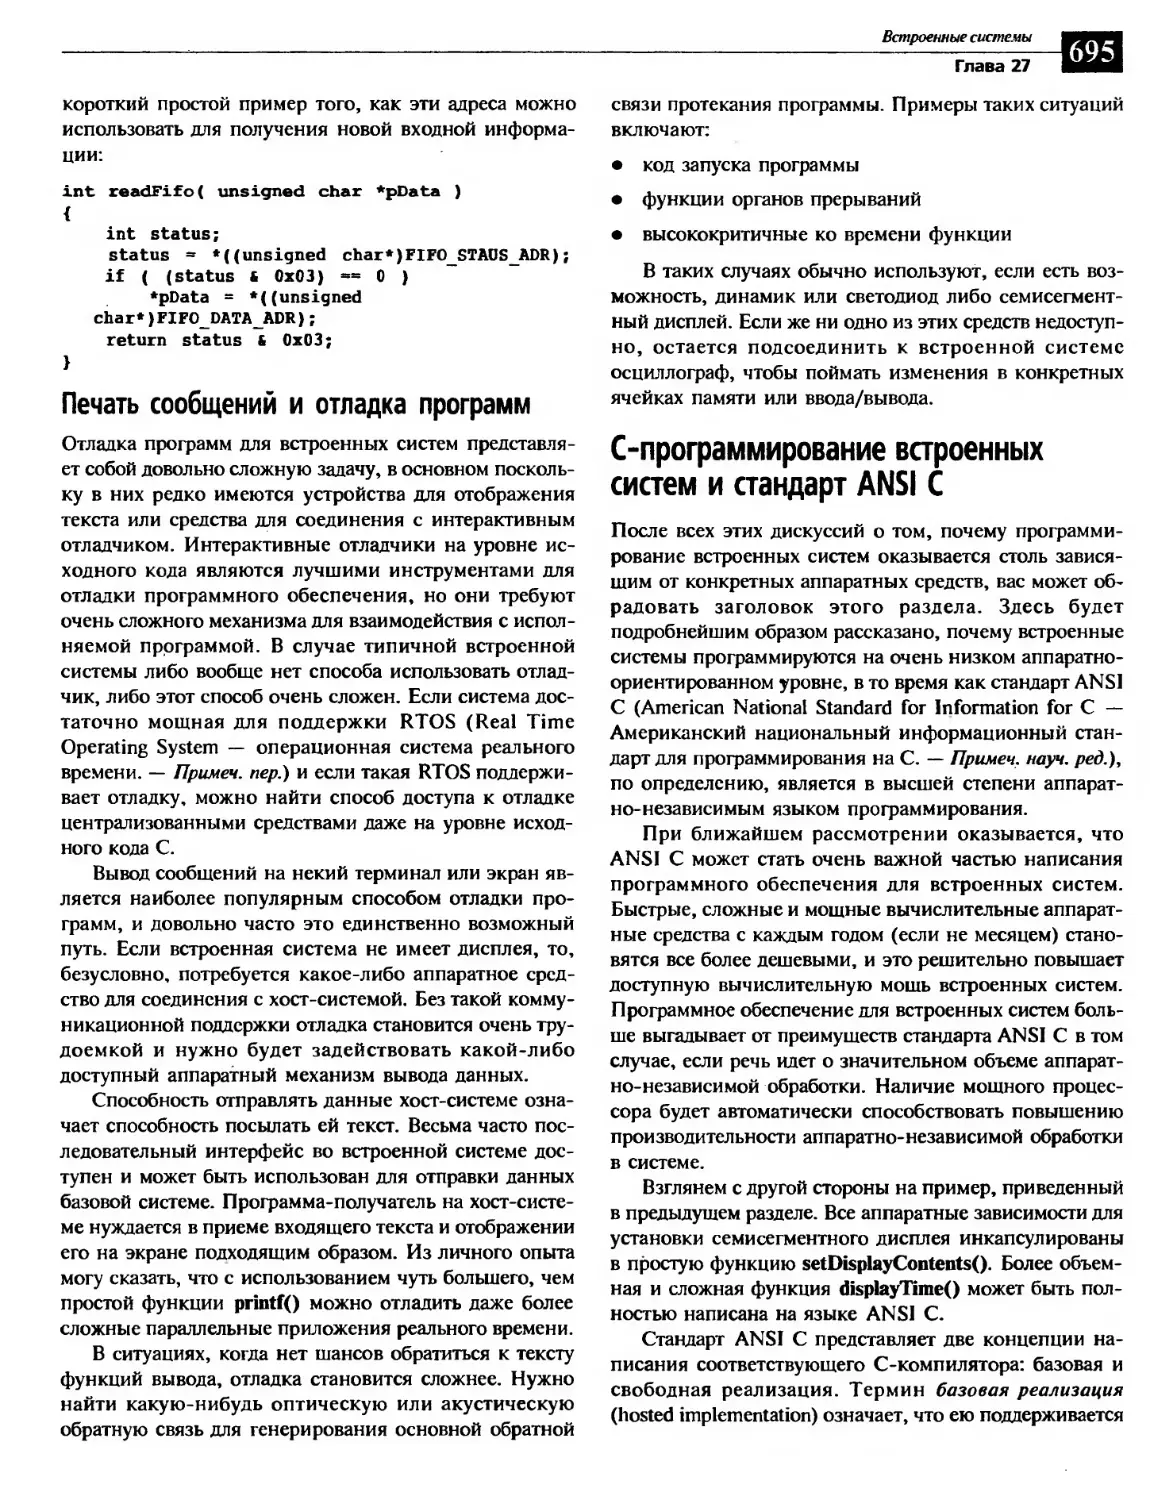 Печать сообщений и отладка программ
C-программирование встроенных систем и стандарт ANSI C